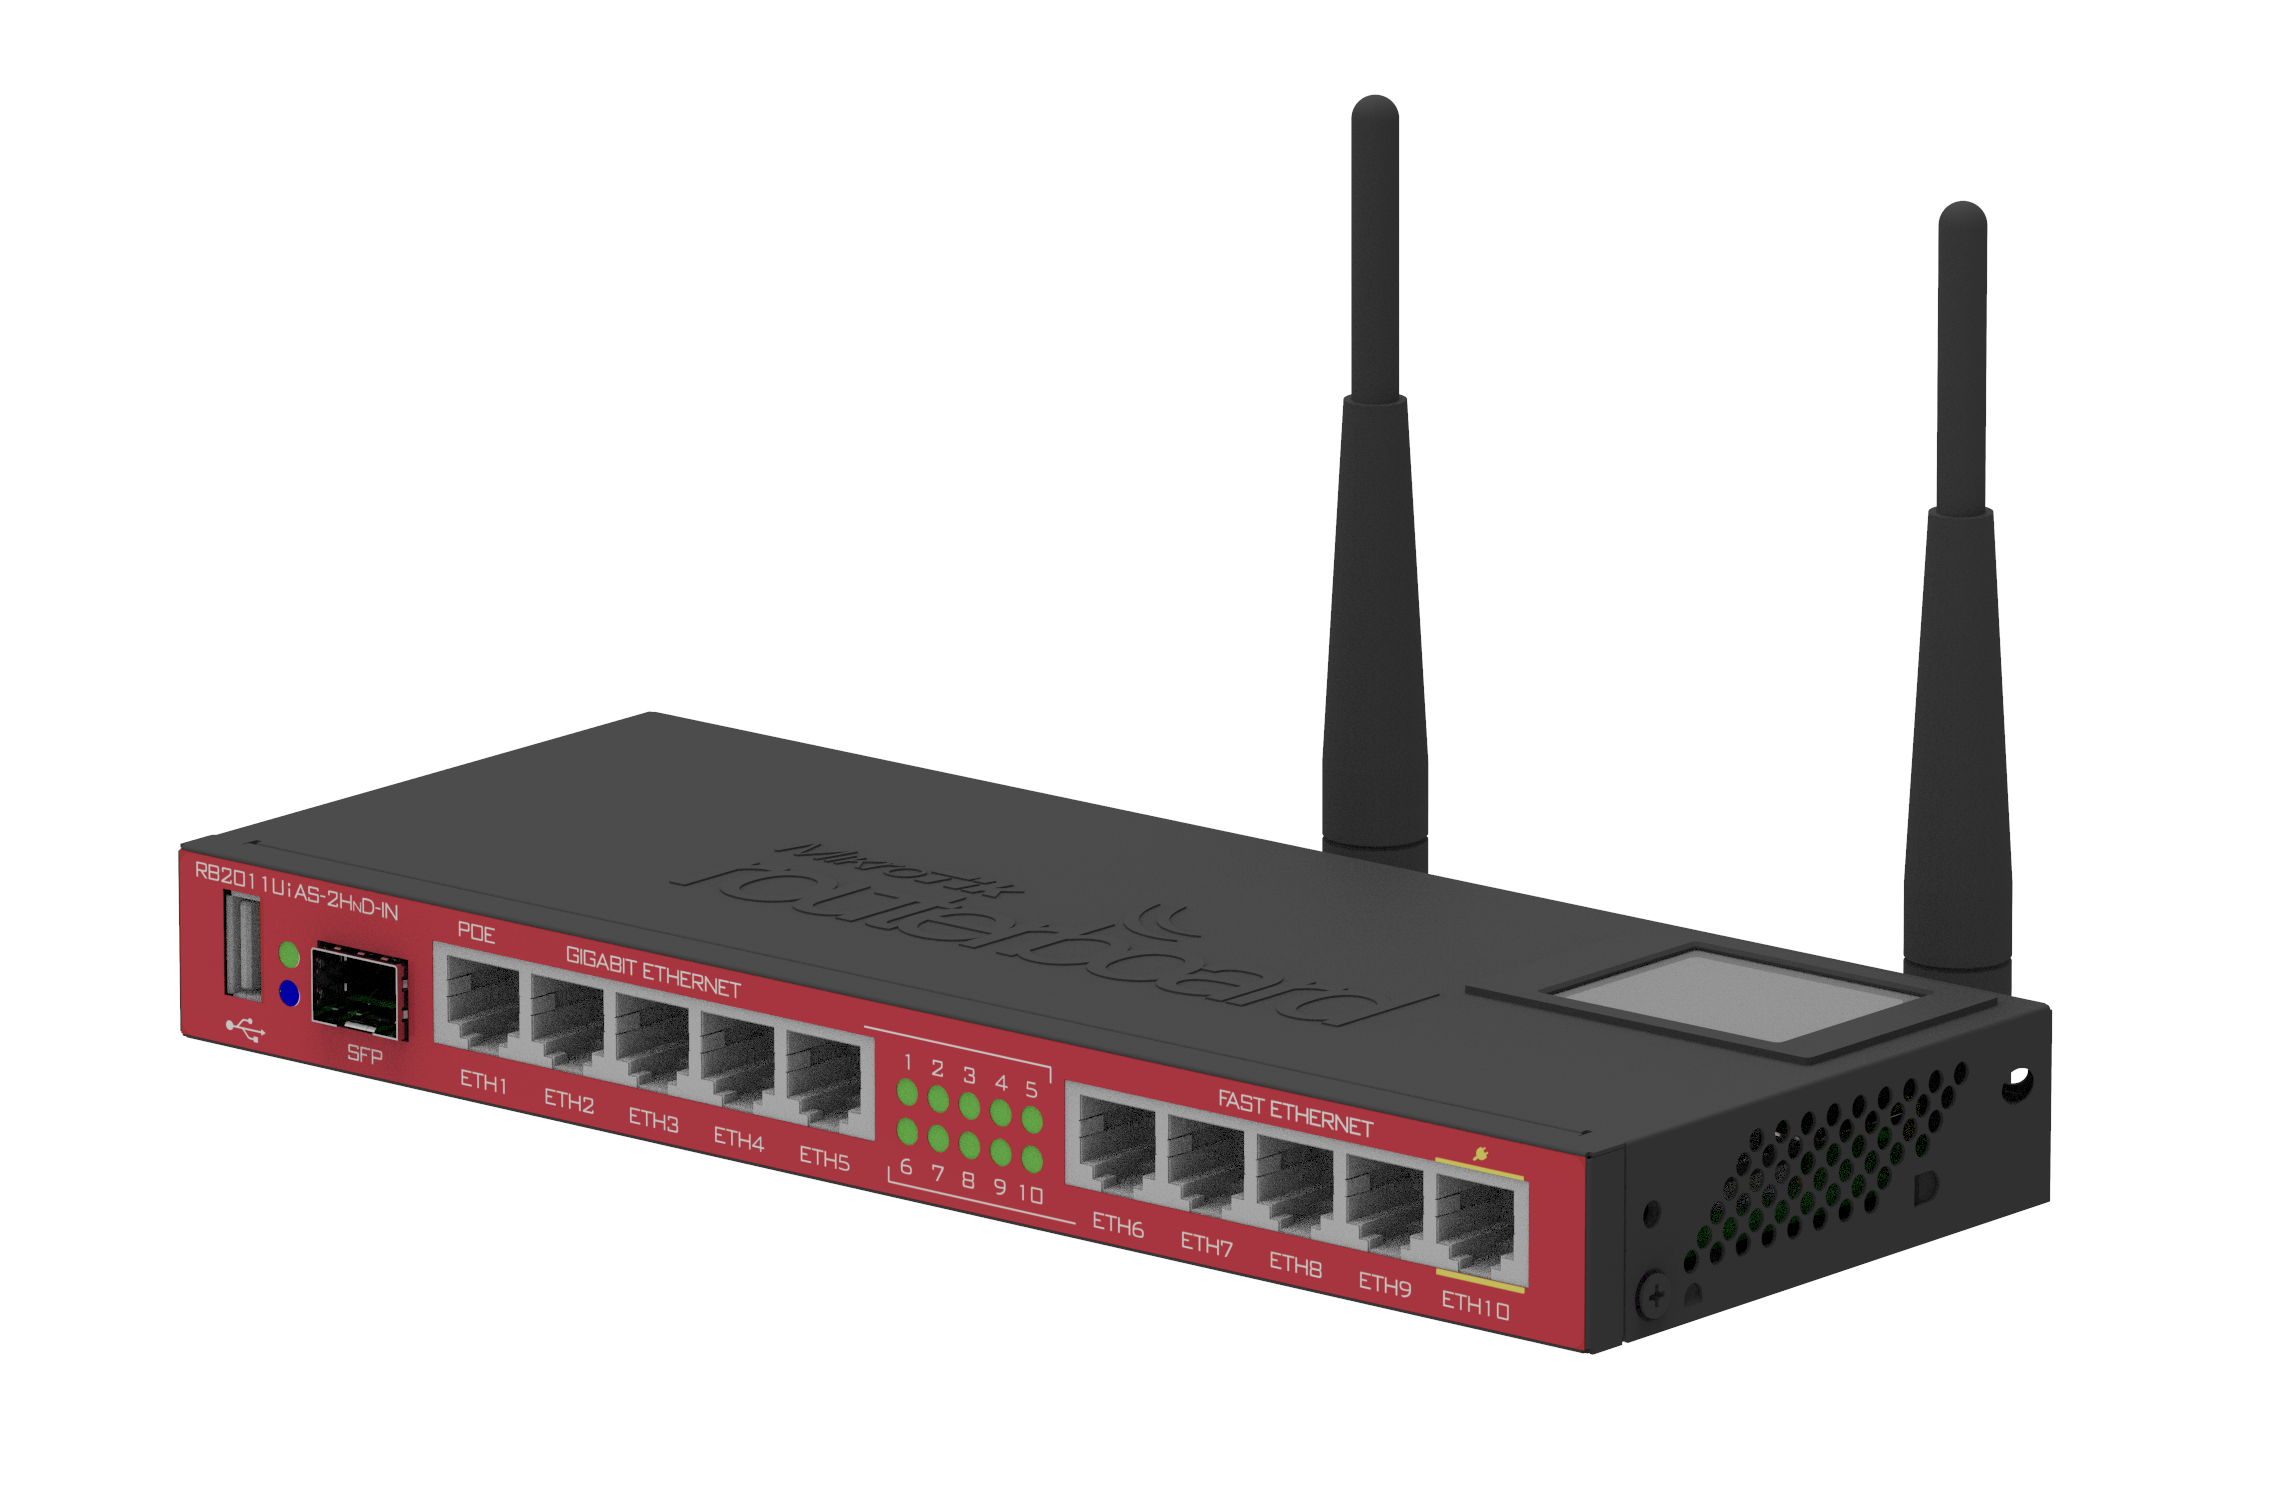 Súťaž o internetový router MikroTik RB2011 v hodnote 100€